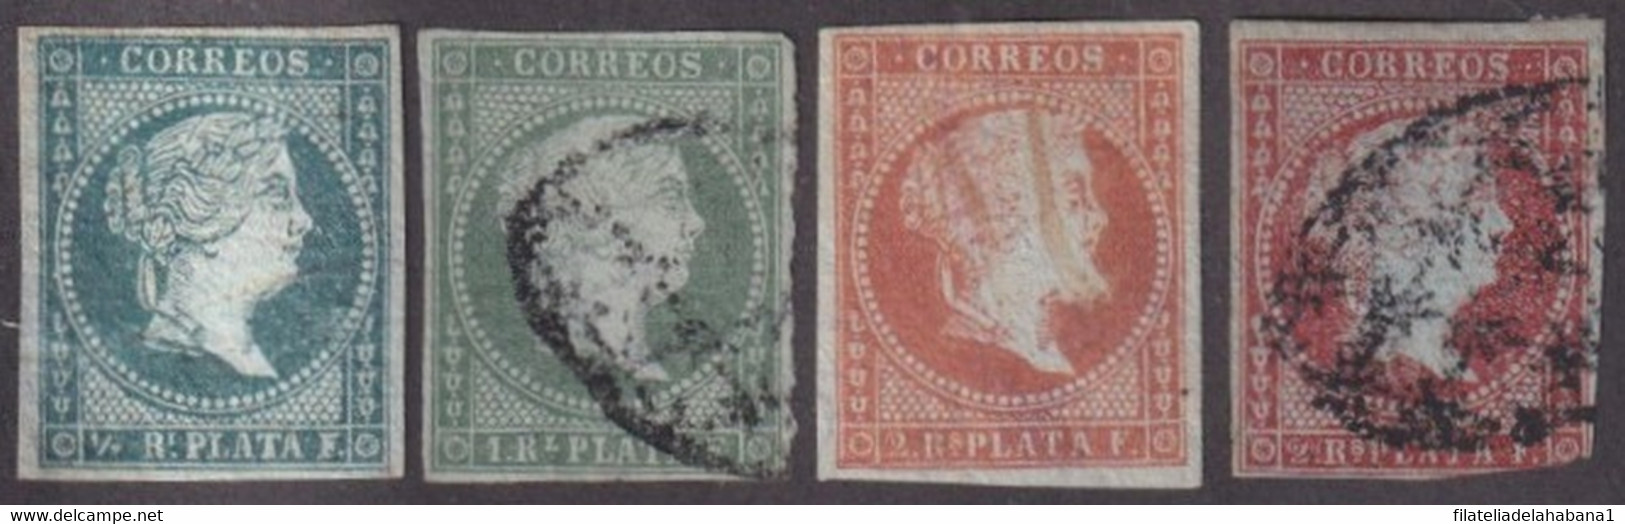 1855-270 CUBA ANTILLAS PUERTO RICO SPAIN 1855 ISABEL II COMPLETE SET. - Prefilatelia